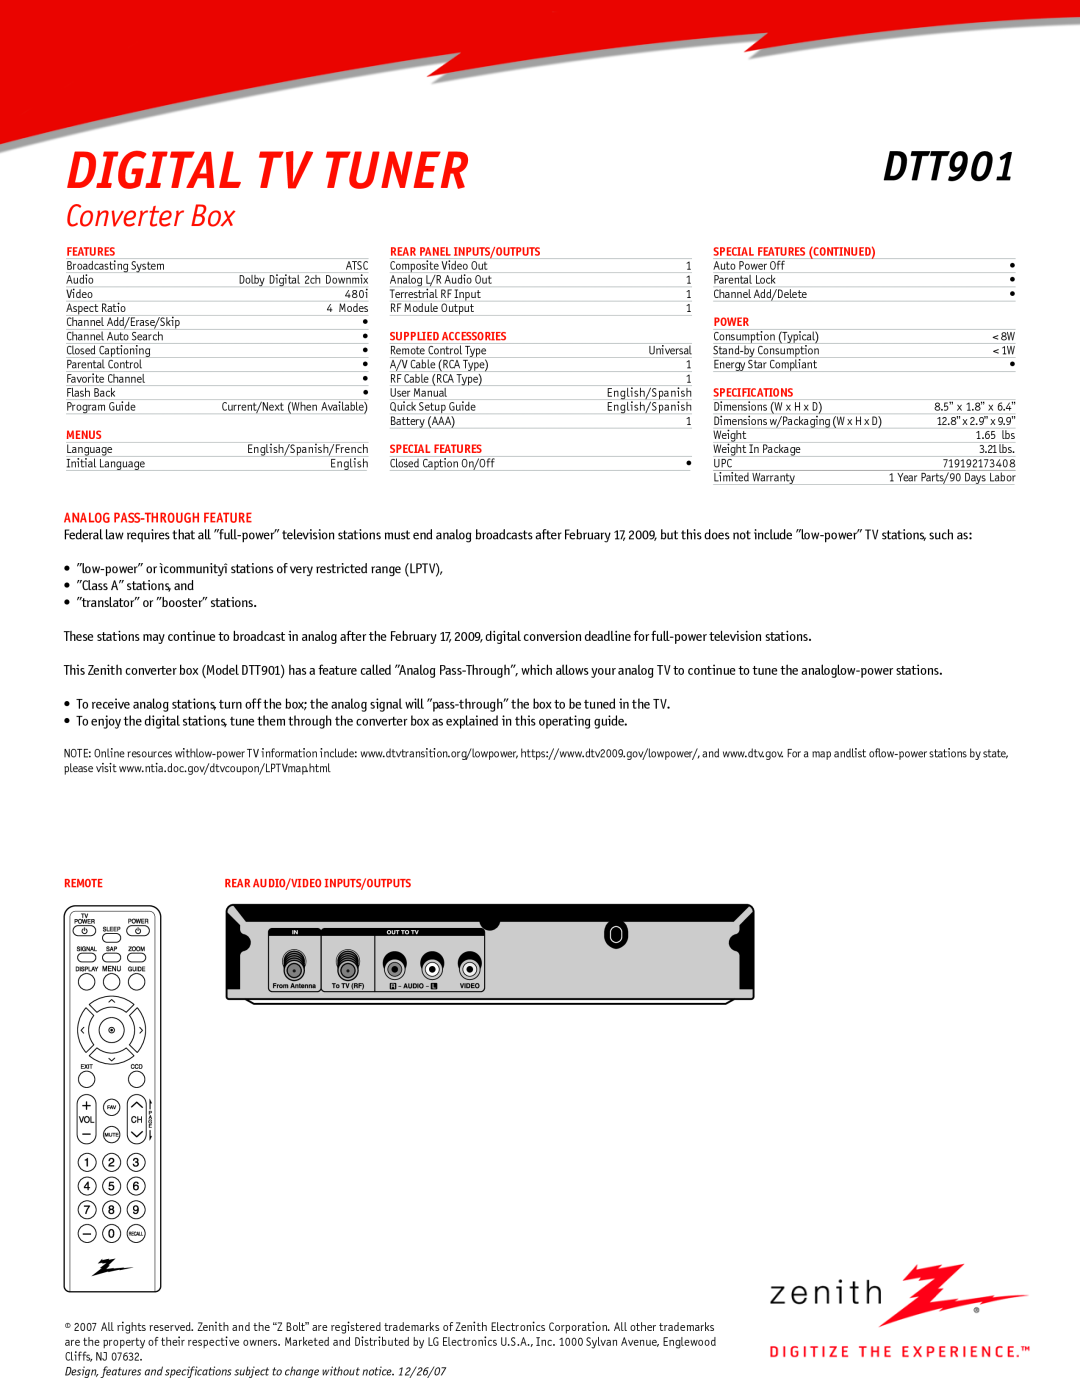 Zenith DTT901 manual Converter Box, Digital Tv Tuner, Analog Pass-Through Feature 